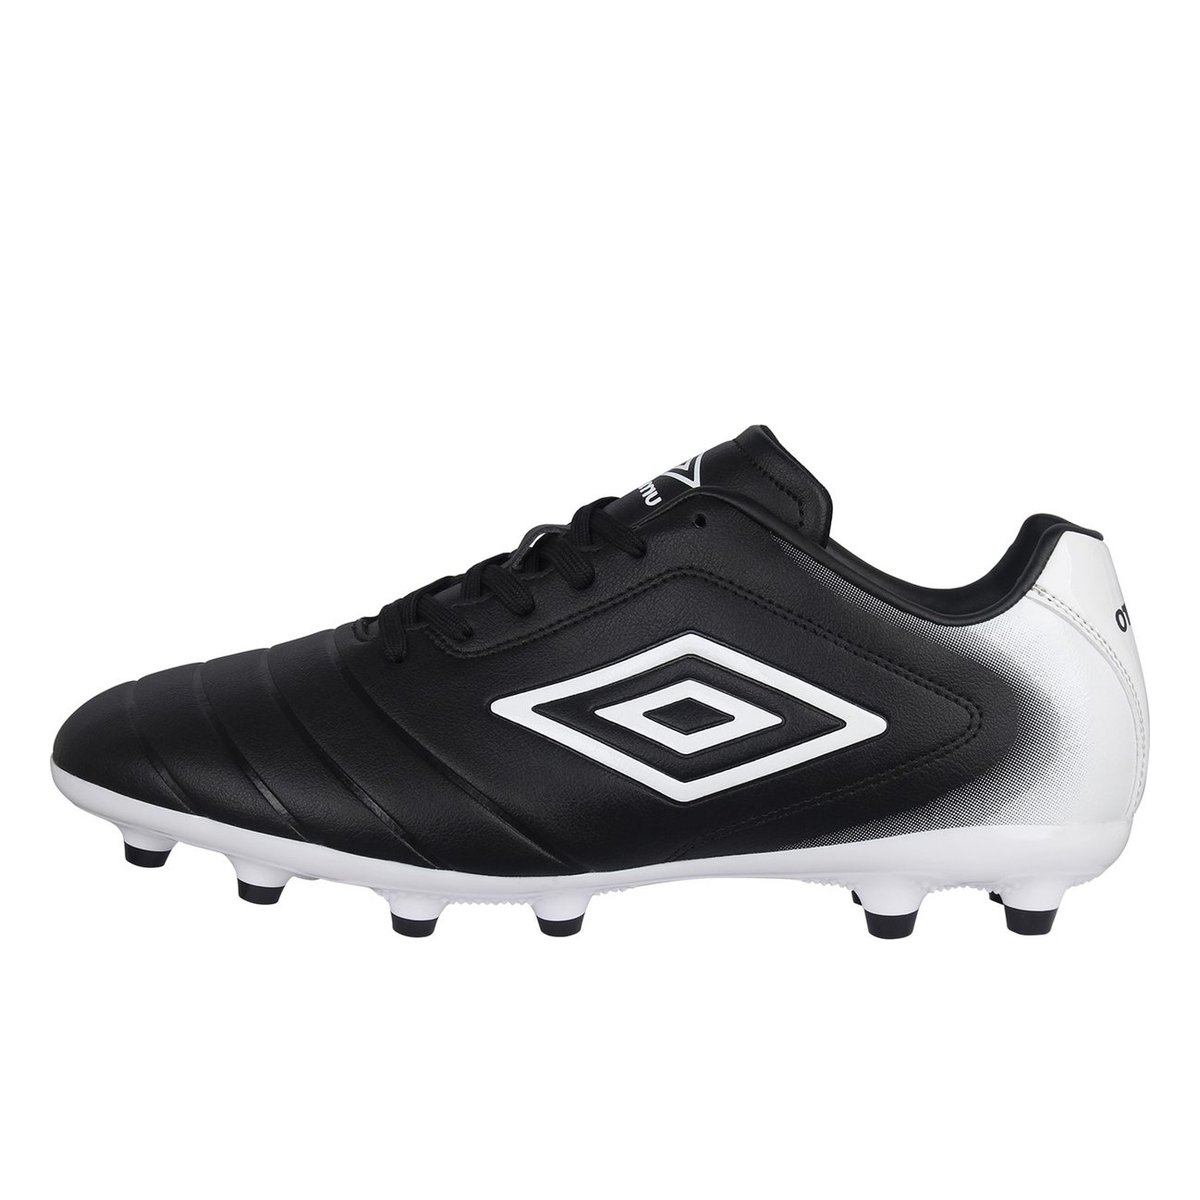 Umbro Calcio FG Boots Mens Black/White, £35.00